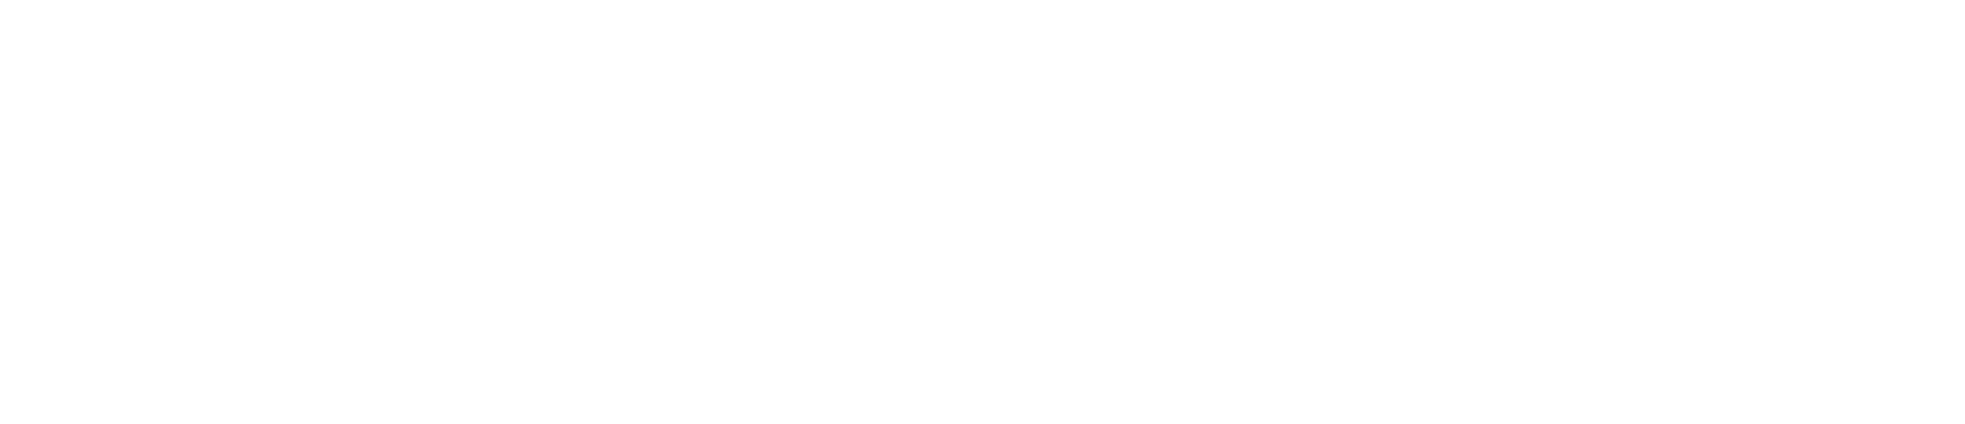 国家乳业技术创新中心官网_乳业国创中心_NCTID_中国乳业唯一的国家级创新中心_共建全链创新生态，共享成果转化价值。